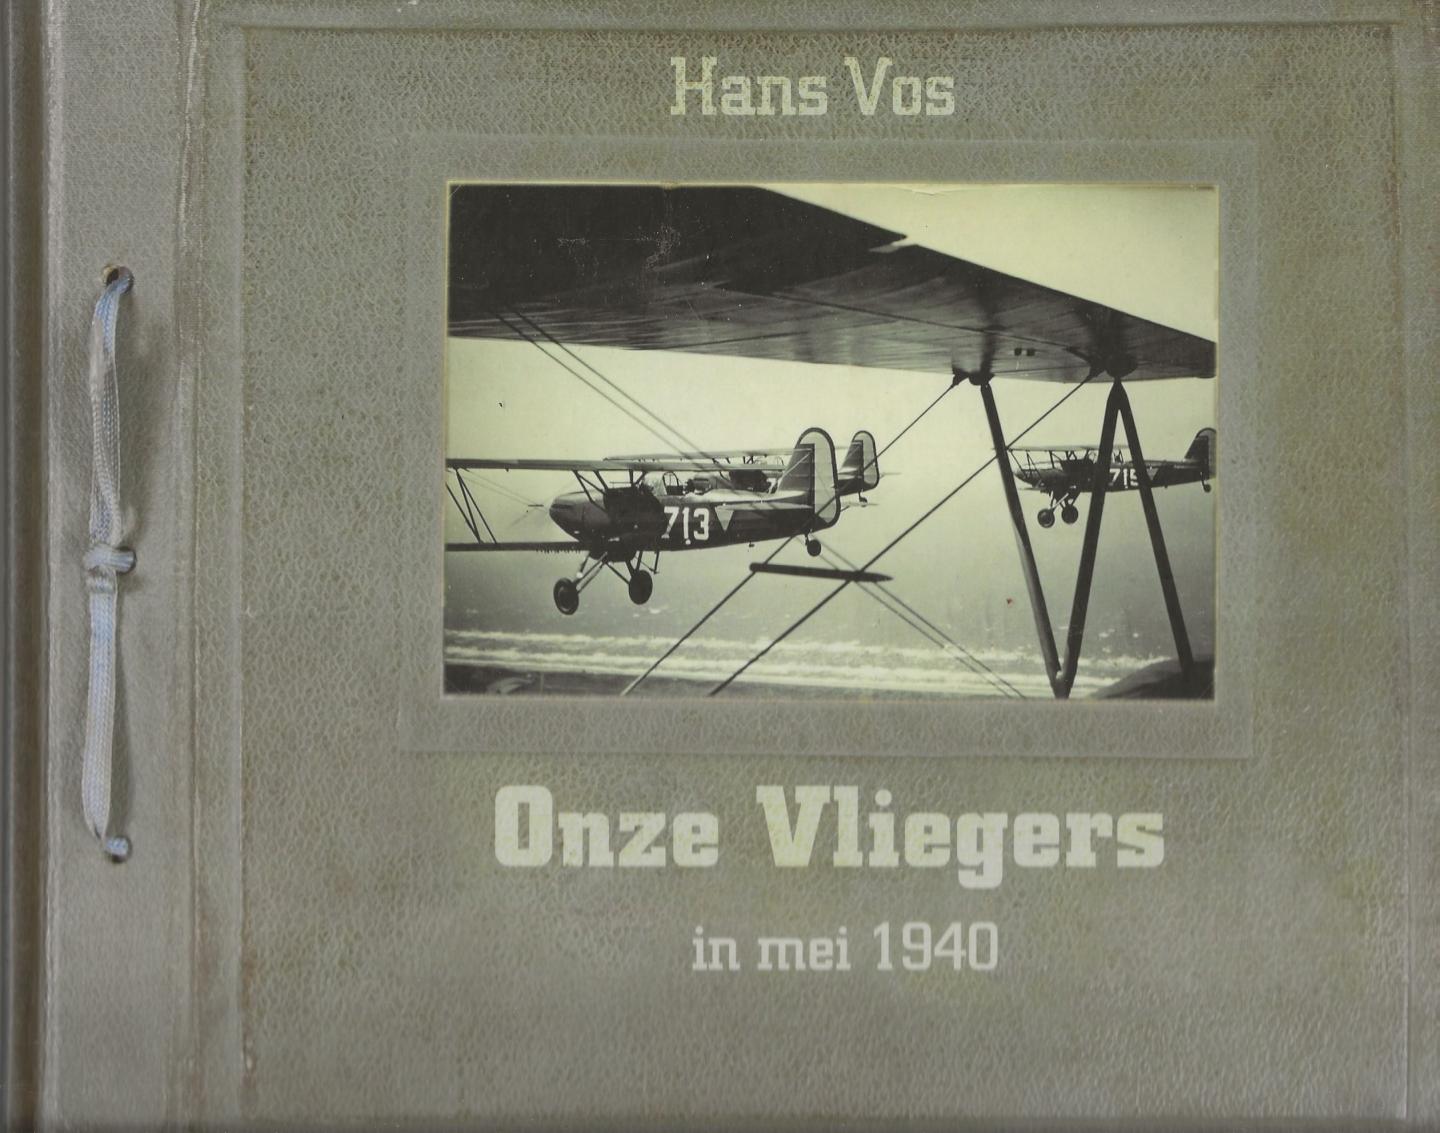 Vos, Hans ... [et al.] - Onze vliegers in mei 1940. Beschrijving van de militaire strijd in het Nederlandse luchtruim in mei 1940 aangevuld met interviews met nog levende piloten uit die tijd